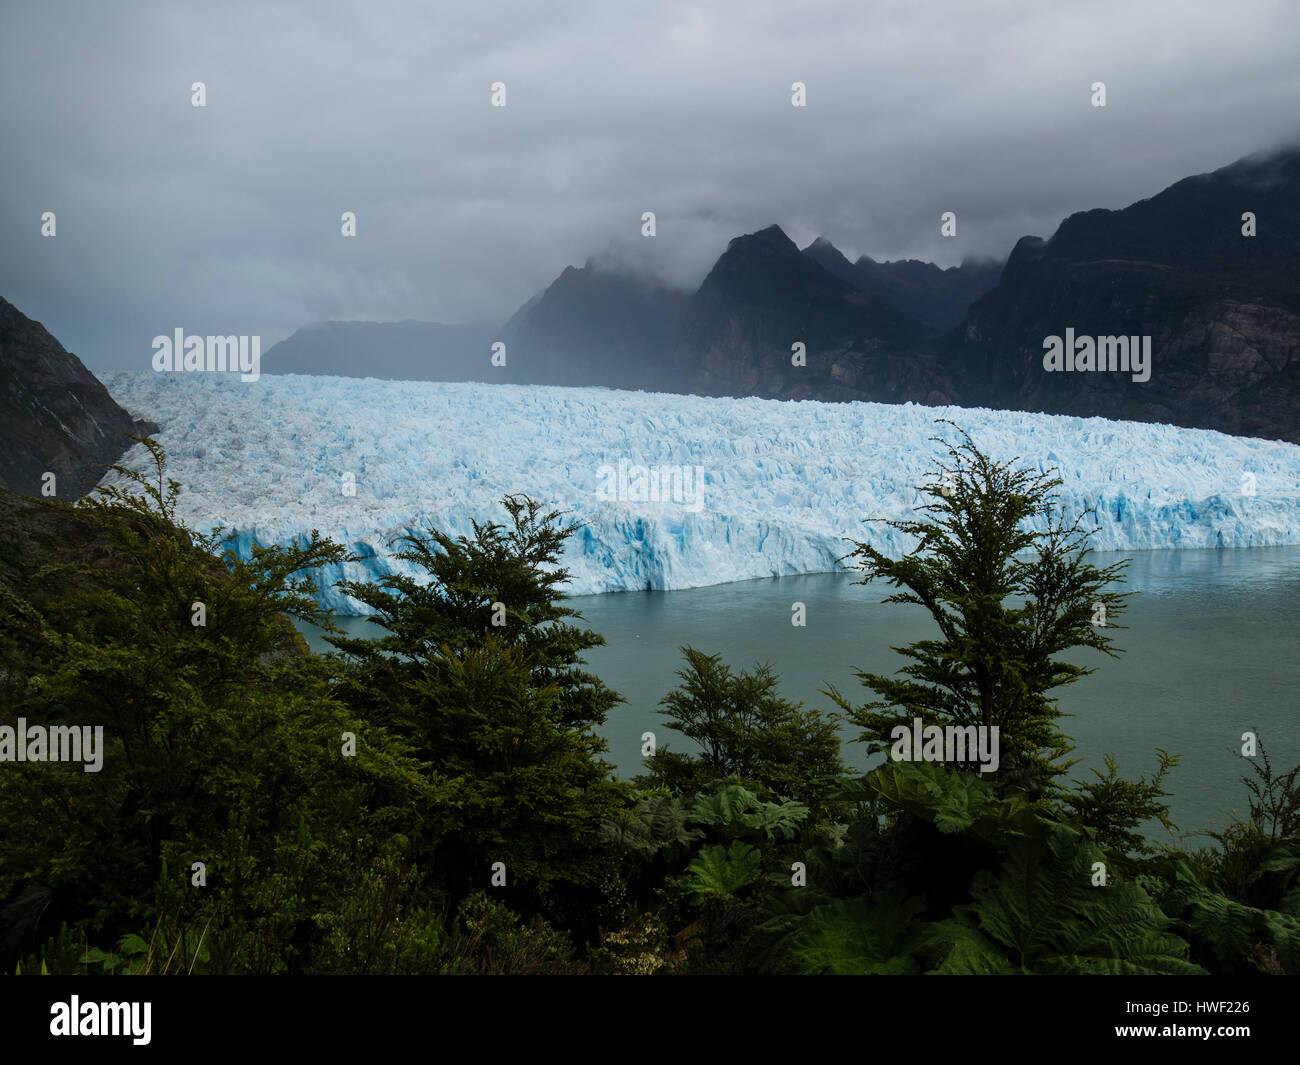 Mirador del glaciar San Rafael cerca del hocico, bosque lluvioso, la laguna San Rafael, parque nacional, región de Aysén, Patagonia, Chile Foto de stock